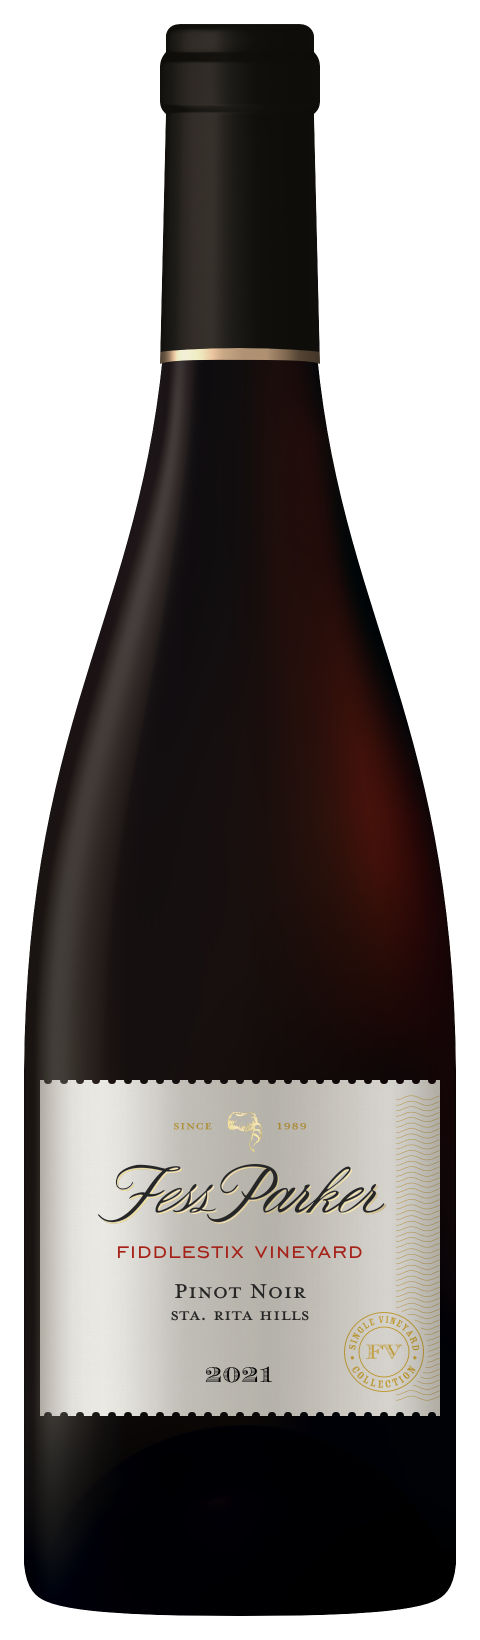 Bottle shot of Fiddlestix Vineyard Pinot Noir